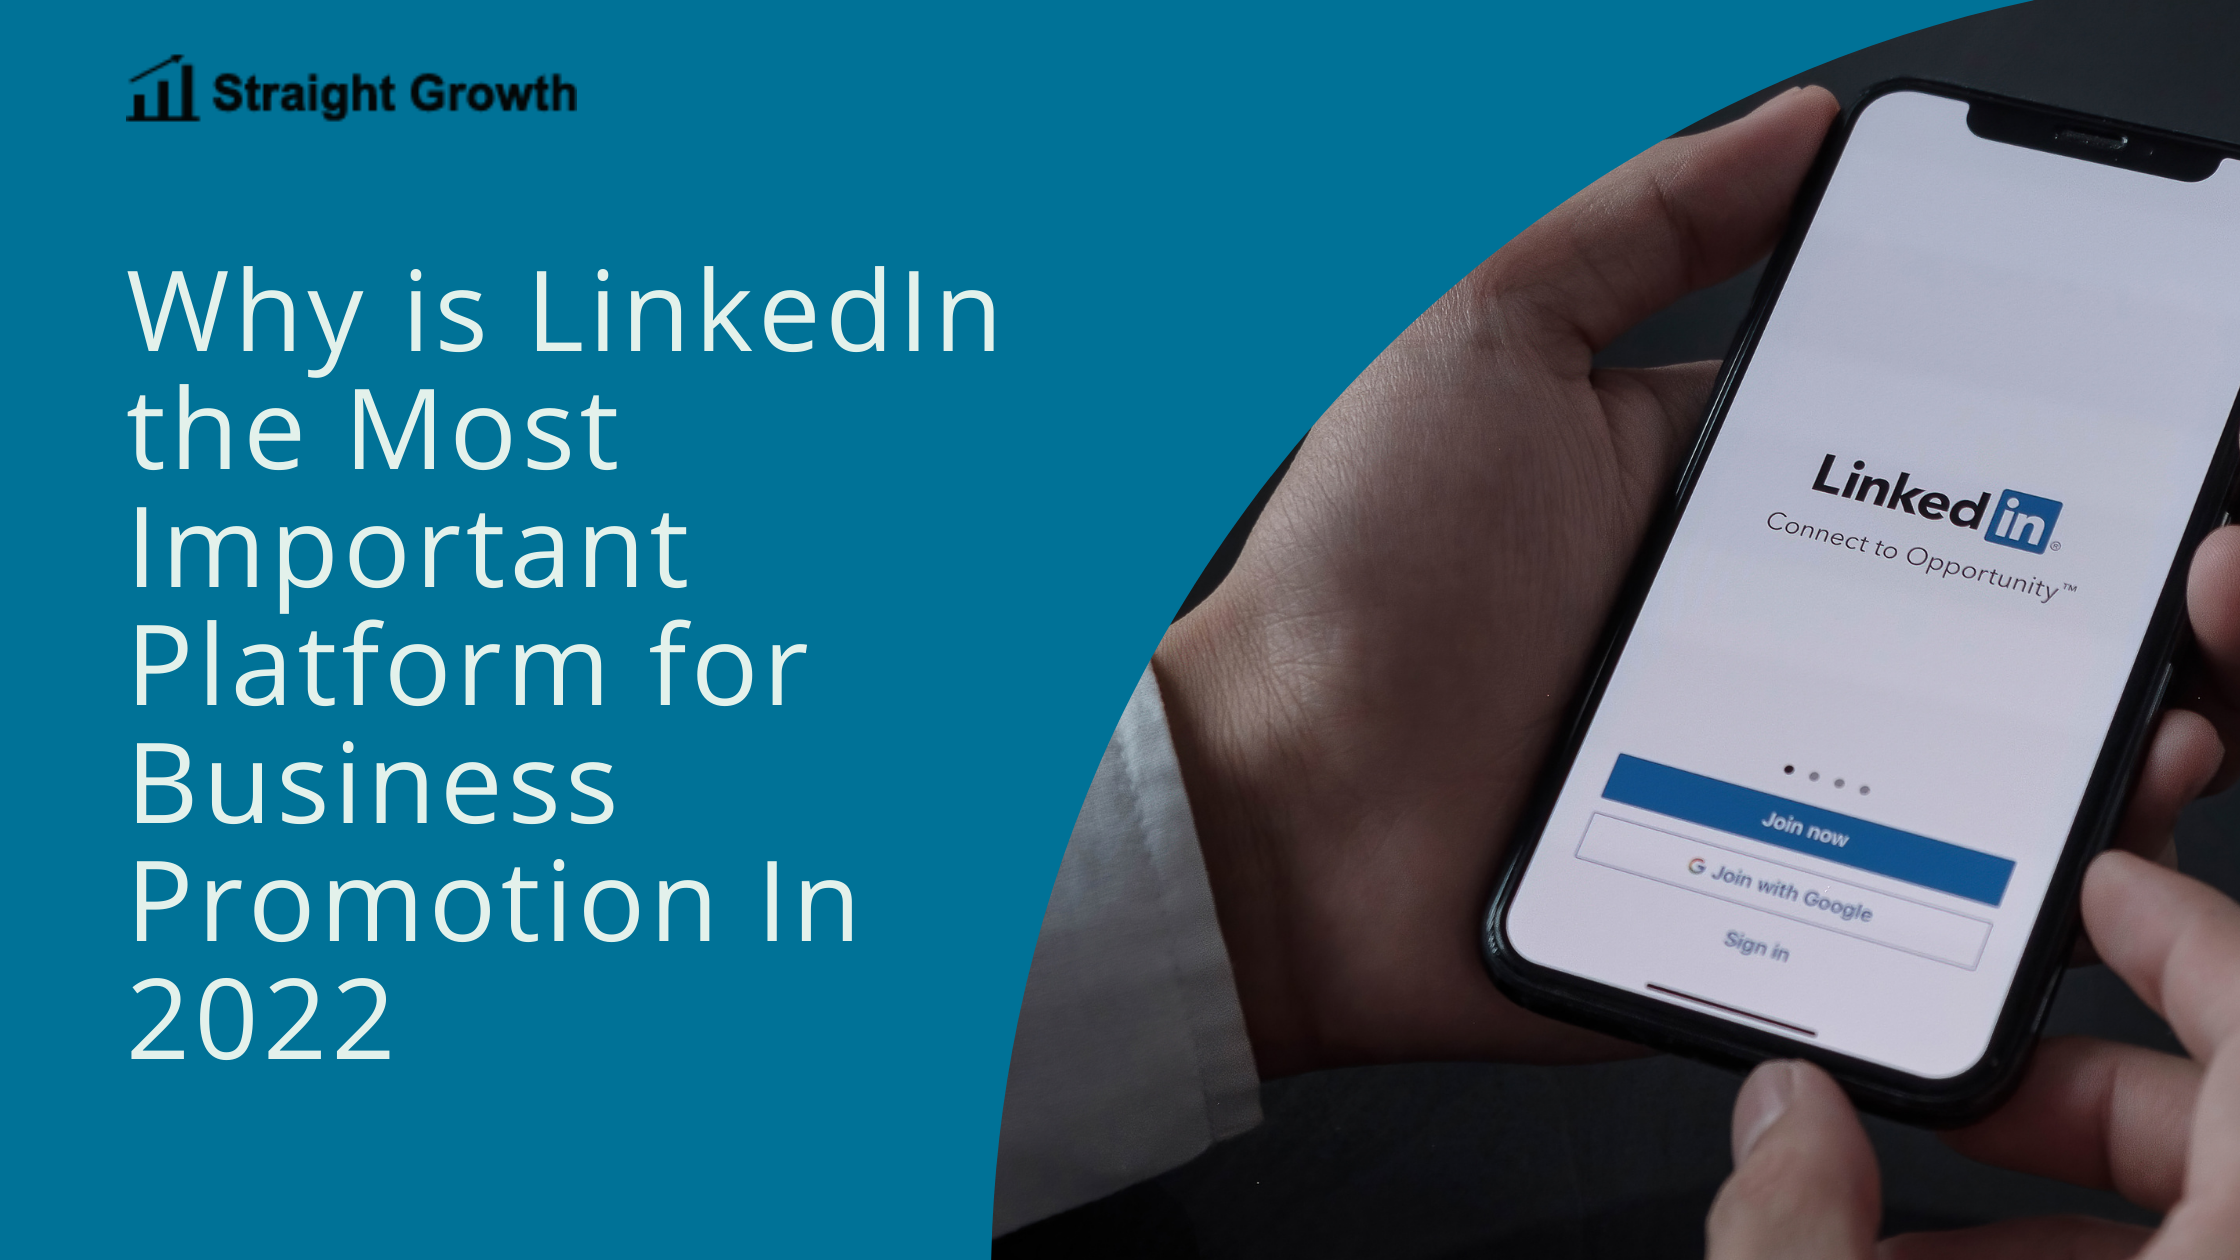 LinkedIn For Business Promotion